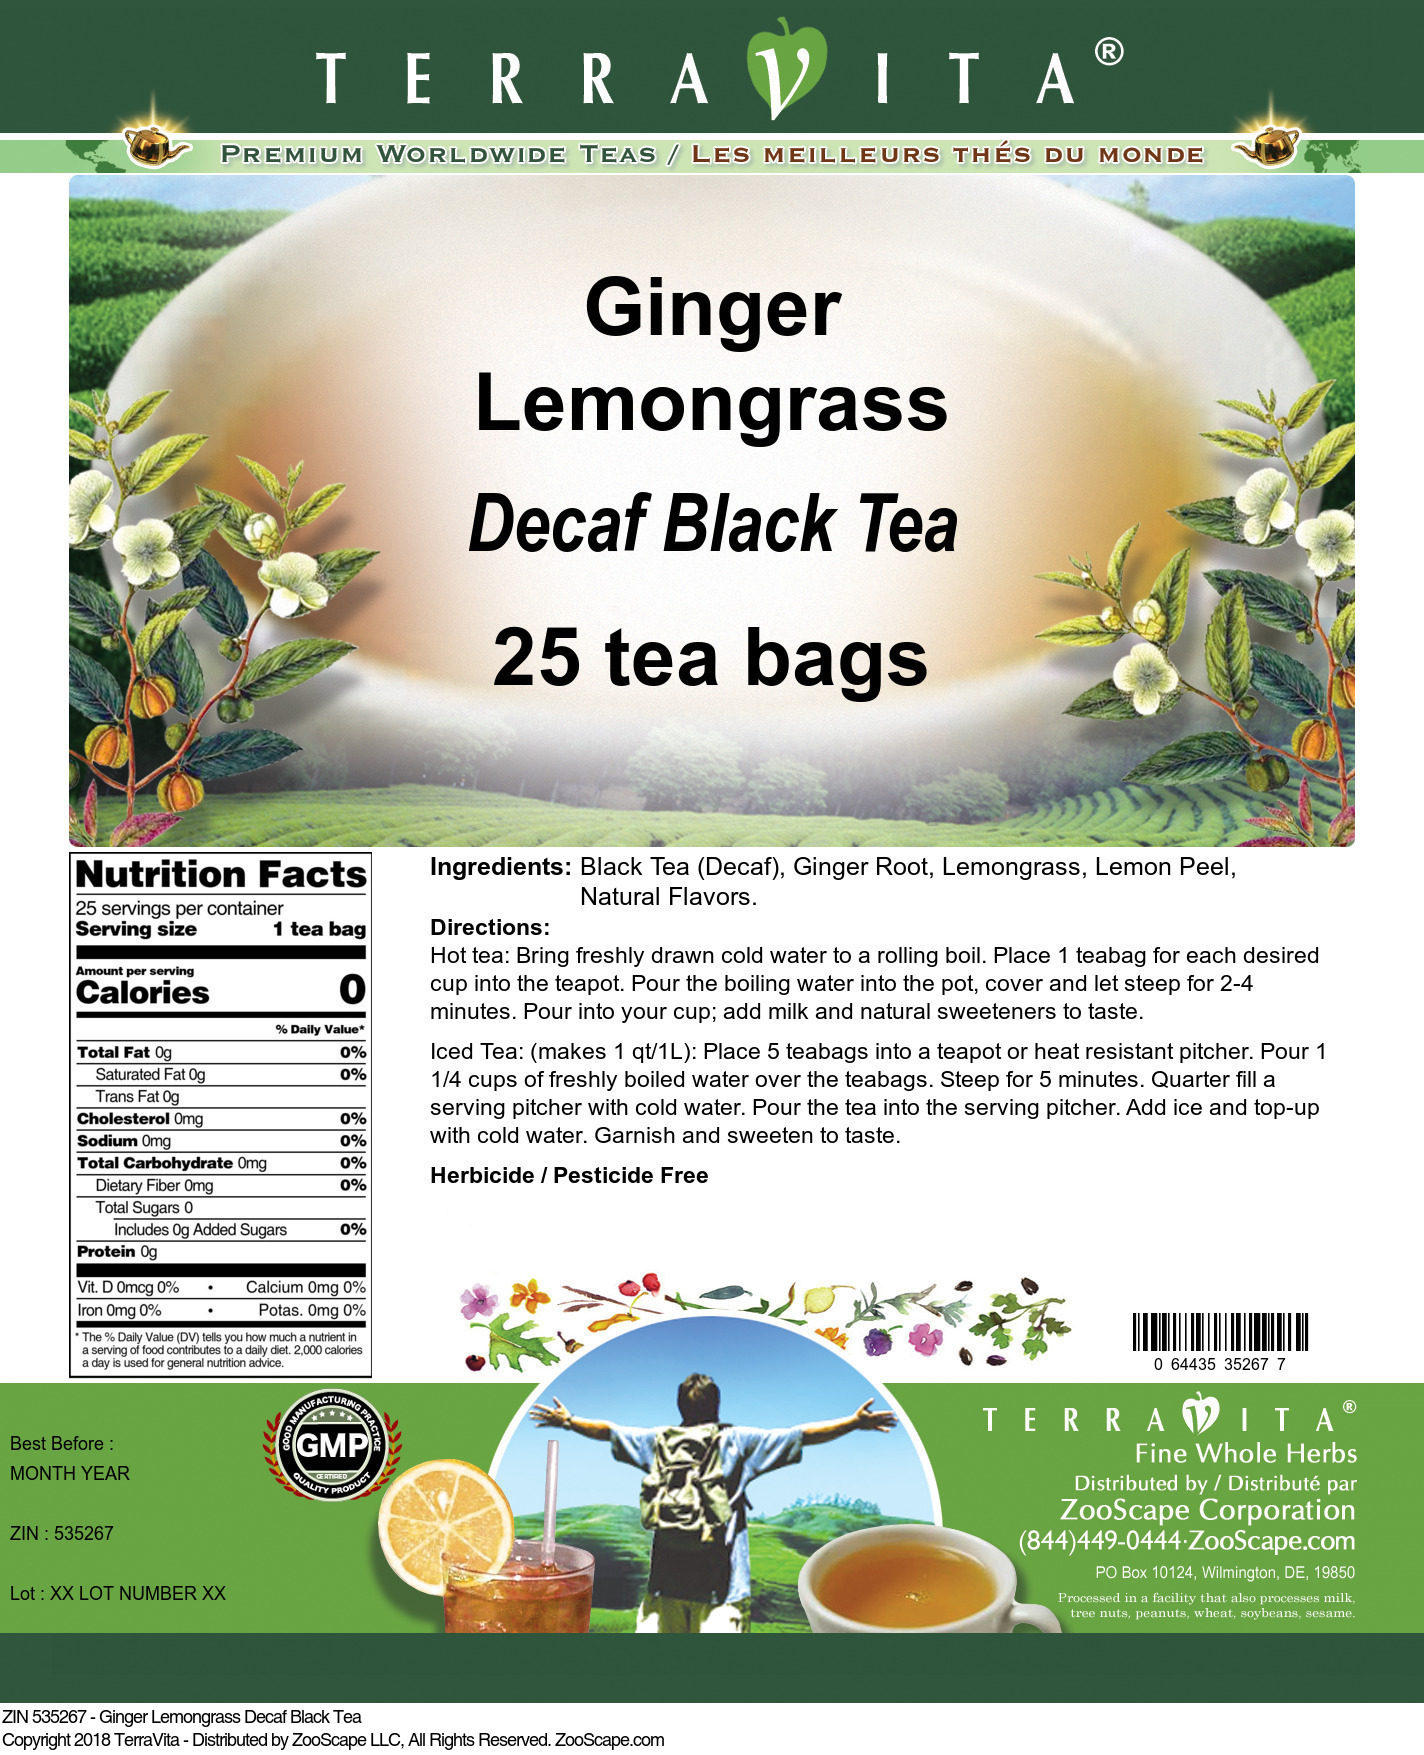 Ginger Lemongrass Decaf Black Tea - Label